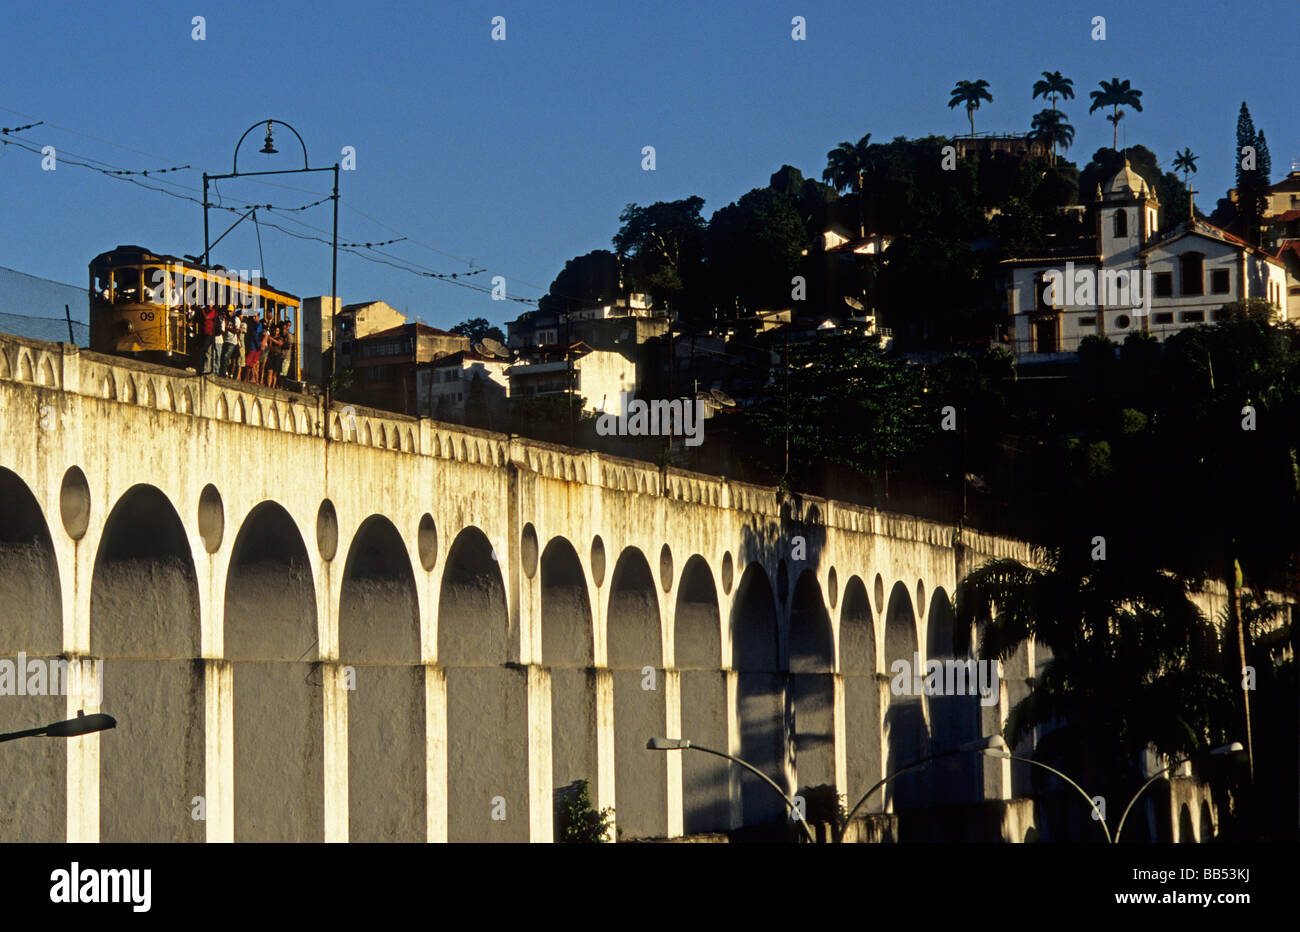 Aqueduc de passage de tramway Lapa Rio de Janeiro Brésil Banque D'Images